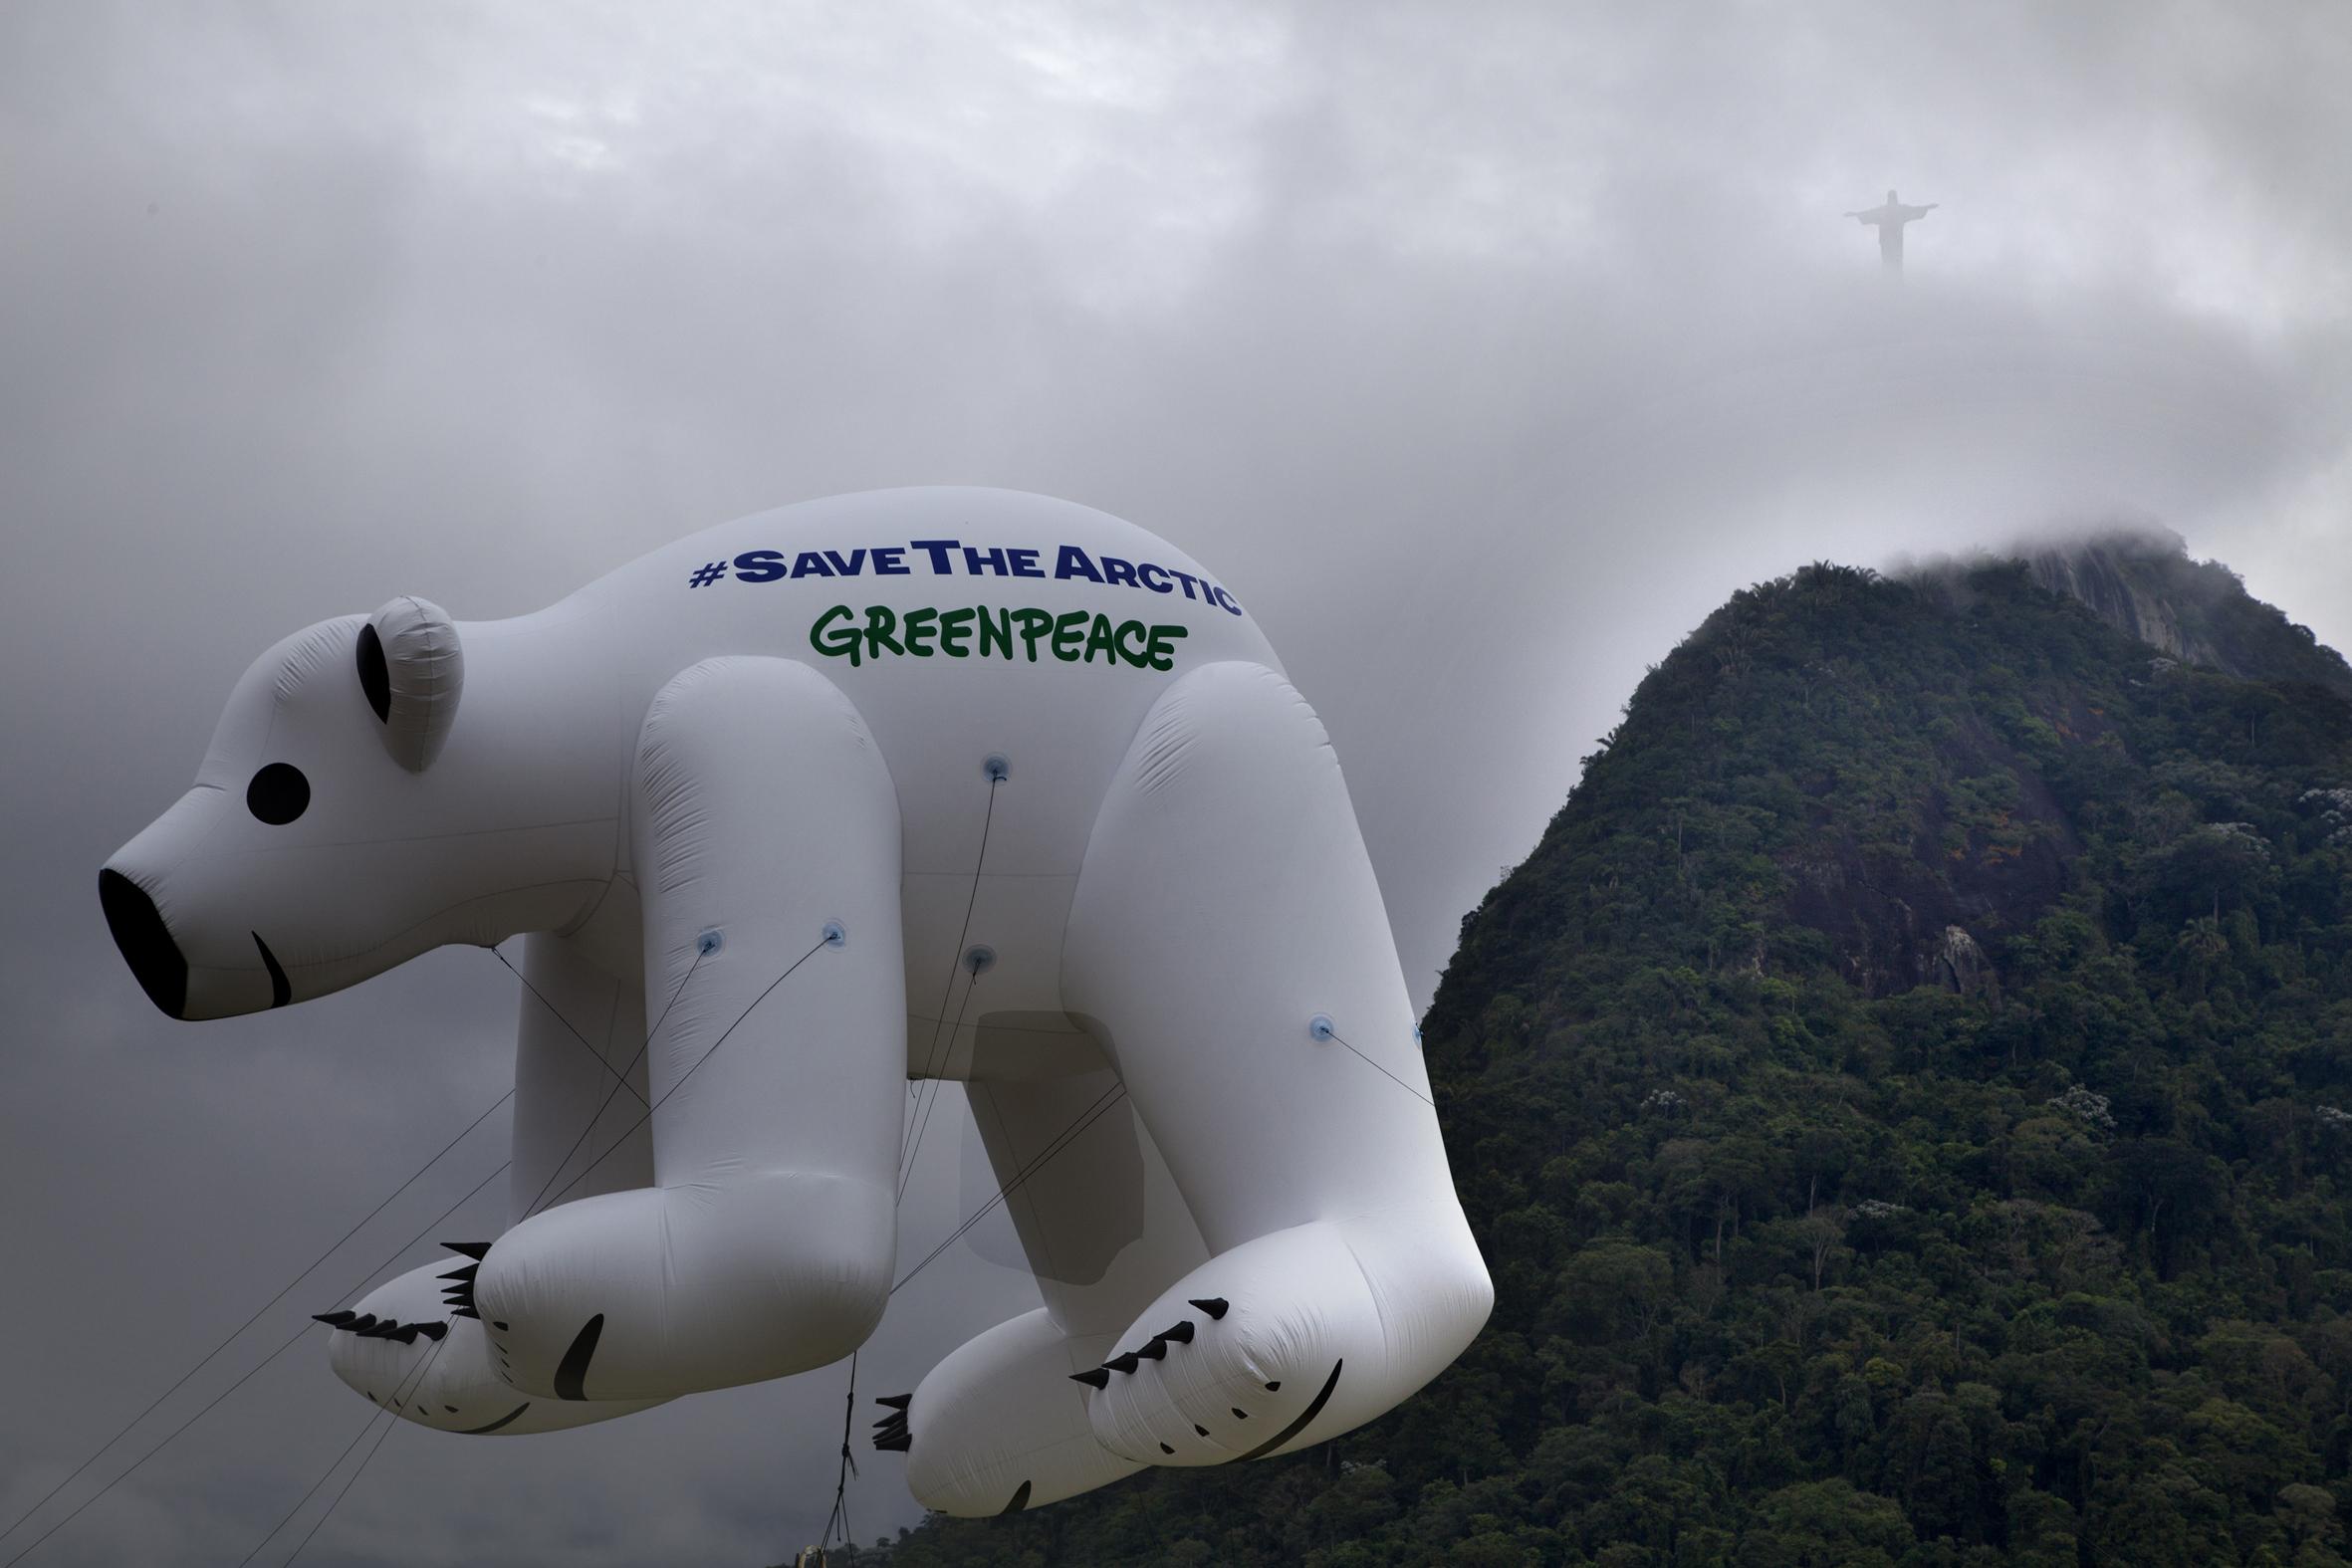 Diante do Corcovado, no Rio de Janeiro, balão em forma de urso polar lembra a urgência de salvar o Ártico. Campanha ganhou apoio de personalidades de todo o mundo (©Marizilda Cruppe/Greenpeace)